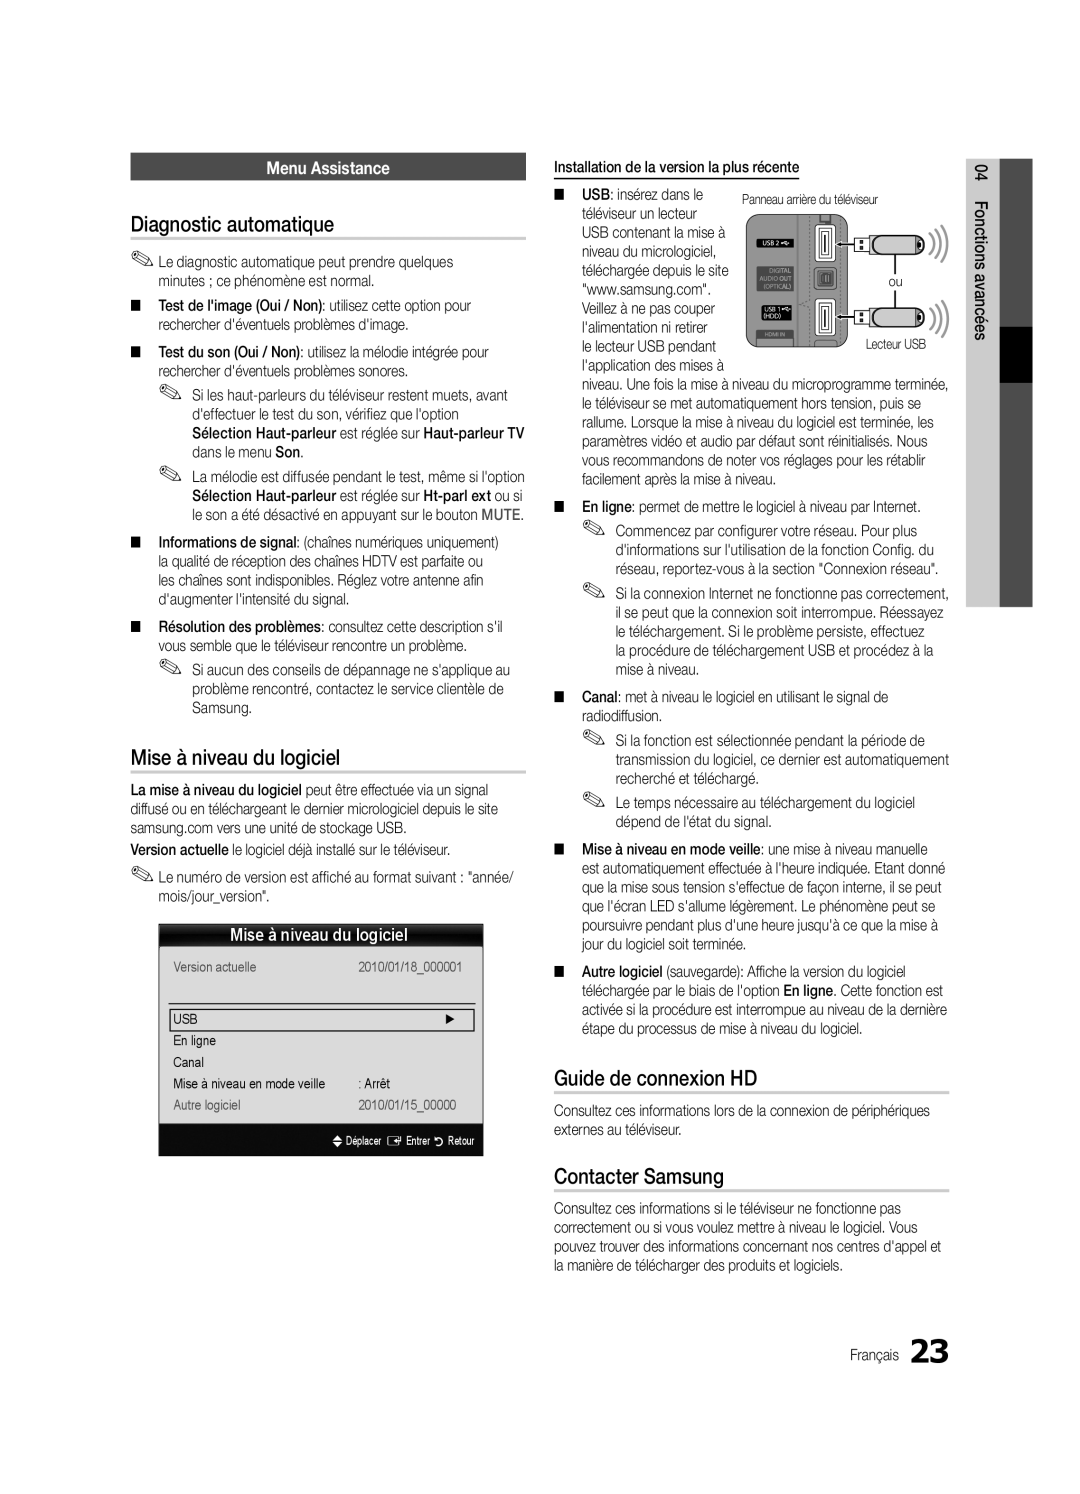 Samsung UE40C5700QSXZG manual Diagnostic automatique, Mise à niveau du logiciel, Guide de connexion HD, Contacter Samsung 